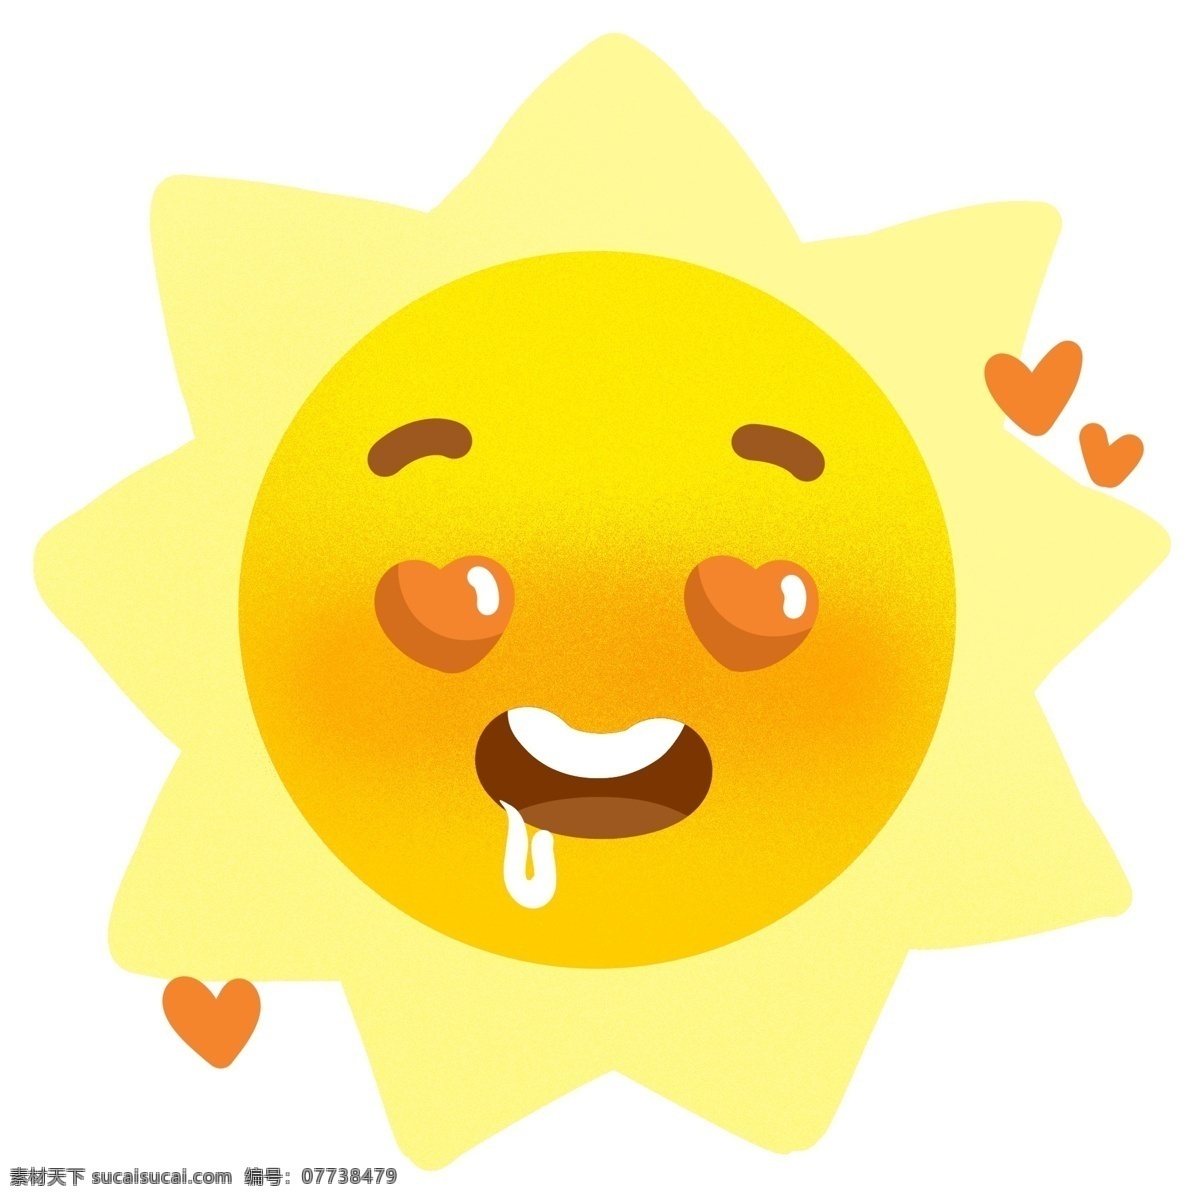 日月星辰 太阳 烈日 表情 卡通 可爱 天气 阳光 行星 设计元素 元素